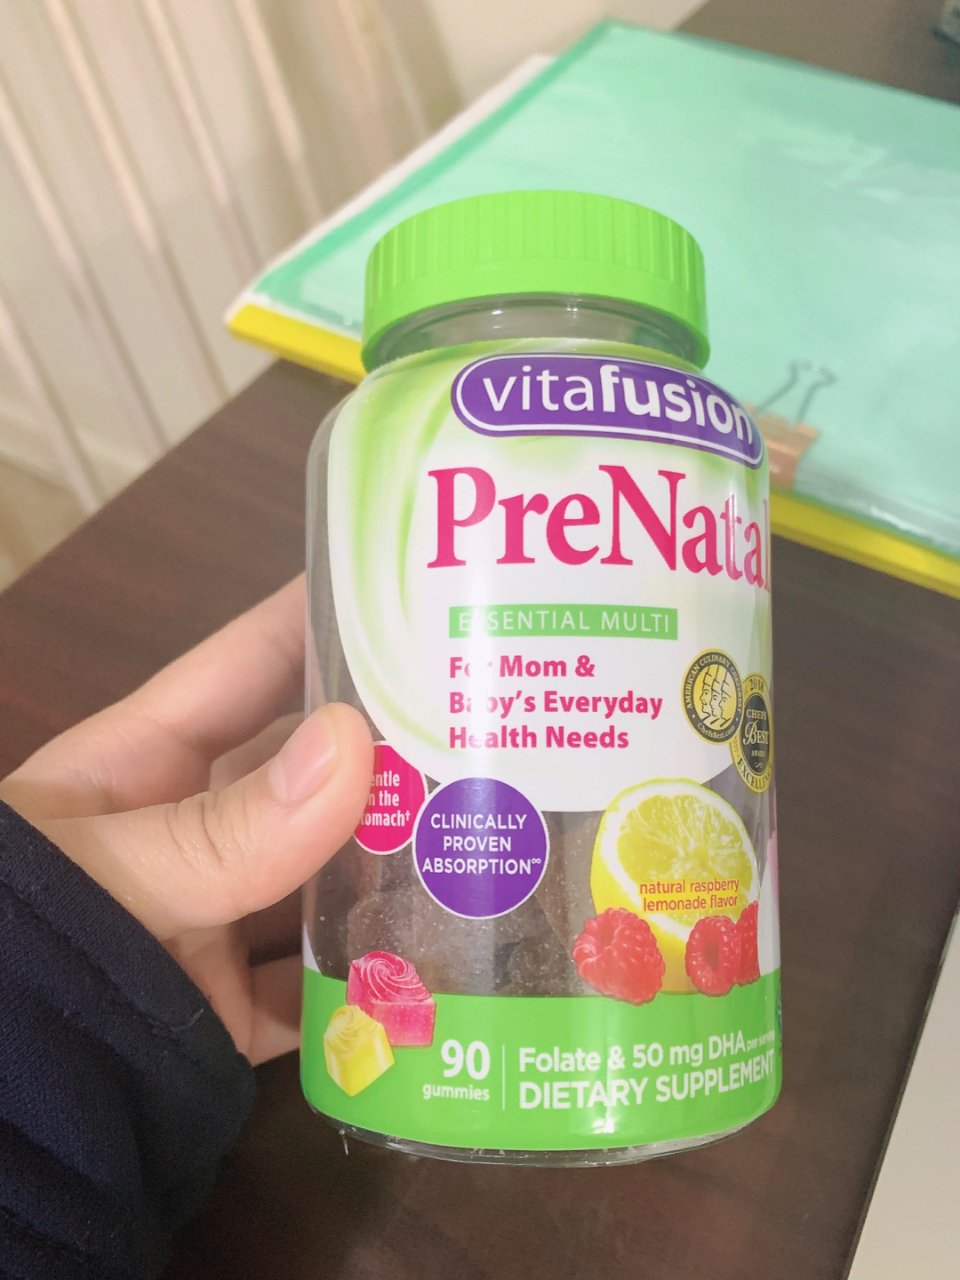 prenatal vitamins,12美元